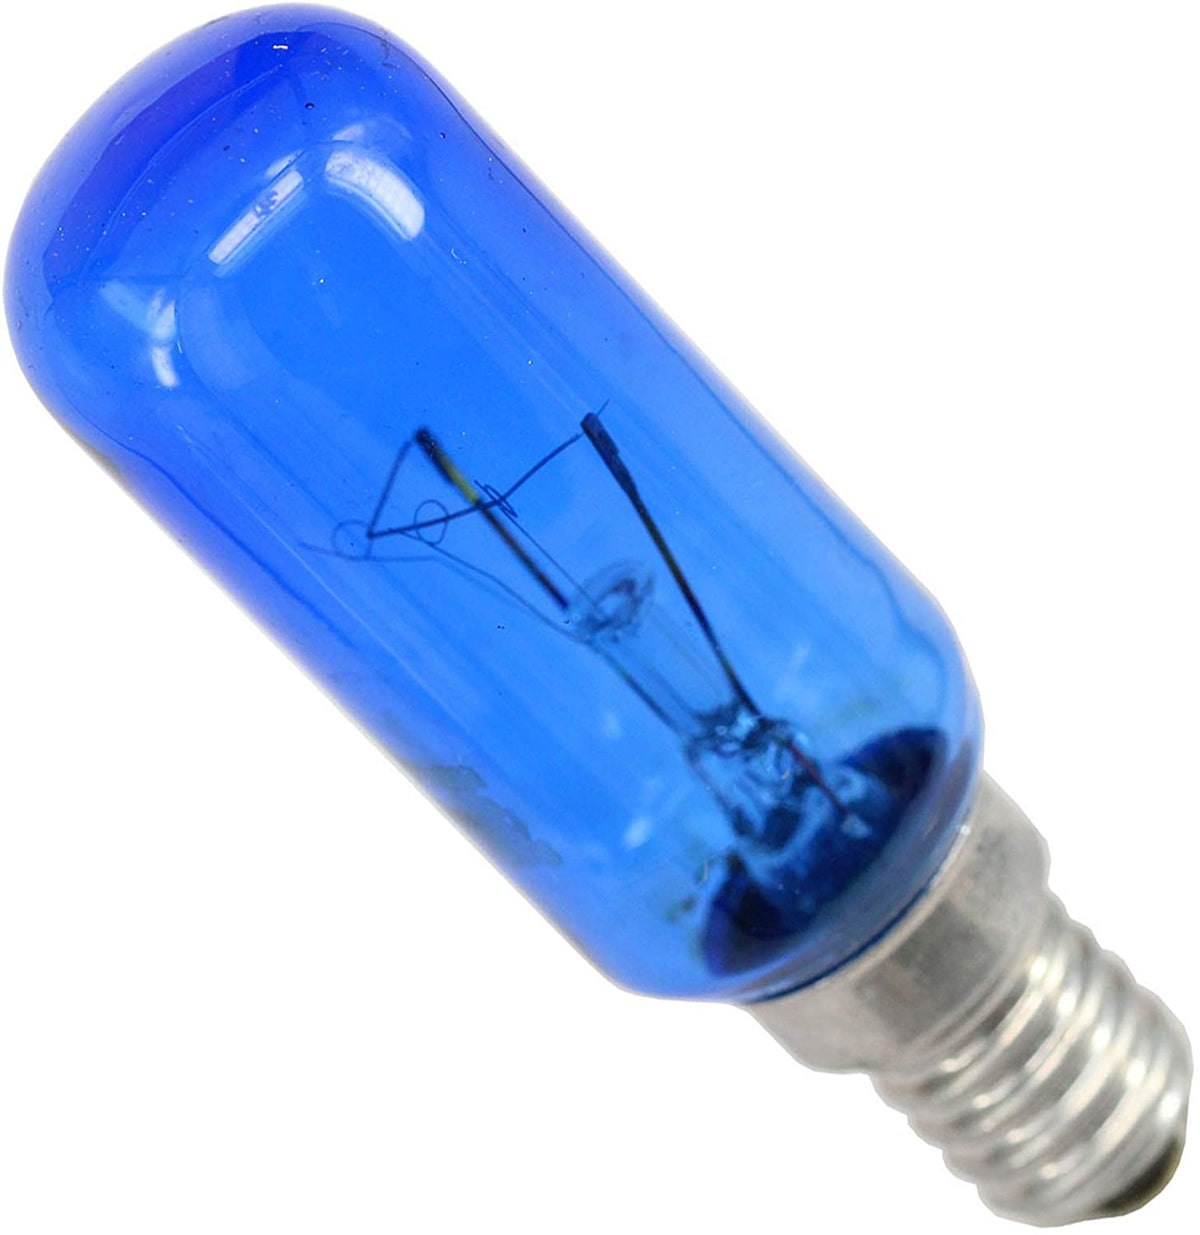 1.5W/3W/15W Bulb E14 LED Light Bulb for Haier Homa Refrigerator Freezer  Parts